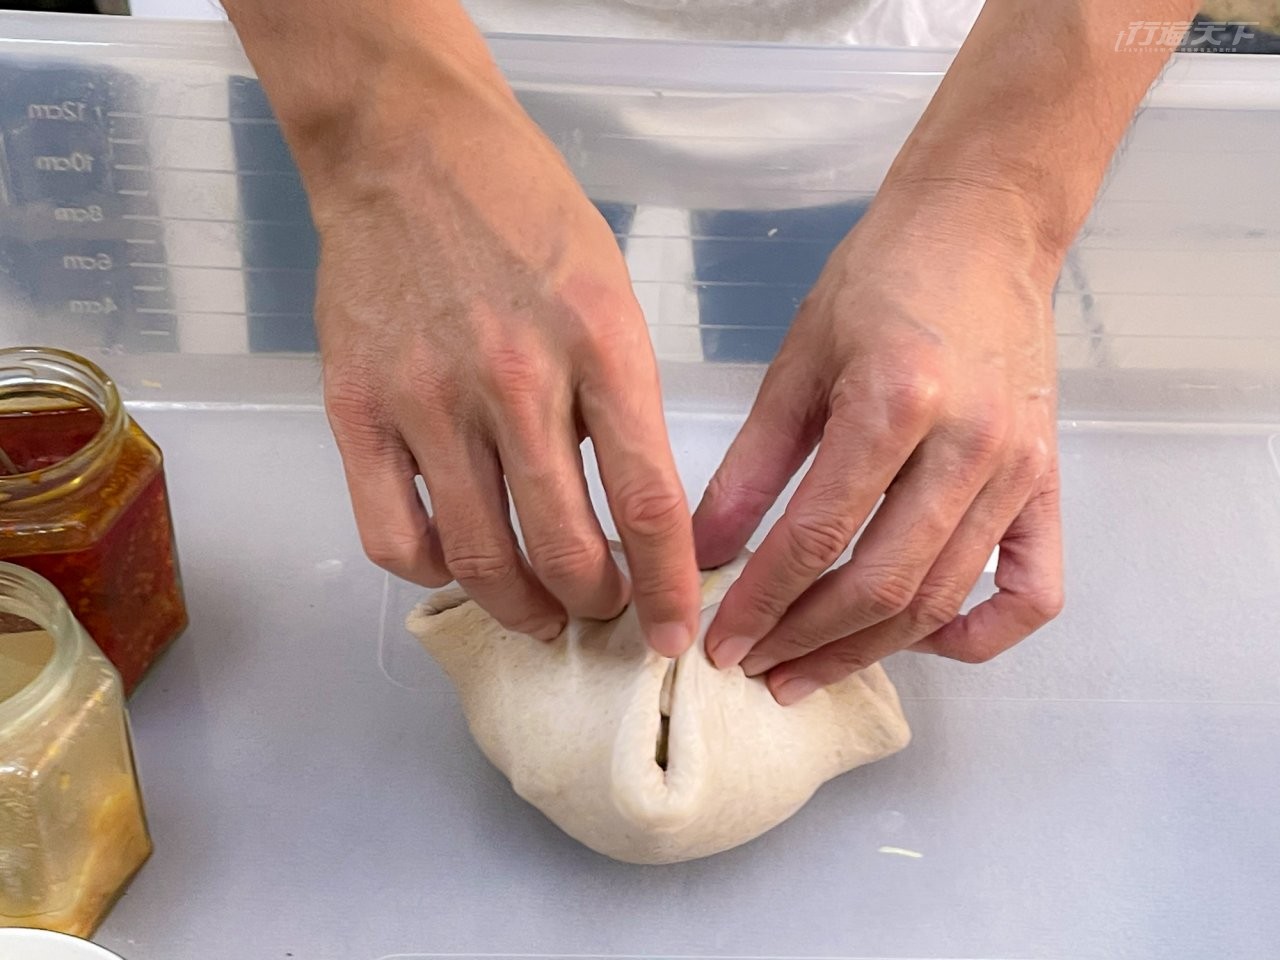 ▲Neo製作麵包的過程像是一場藝術行動劇般流暢有節奏。